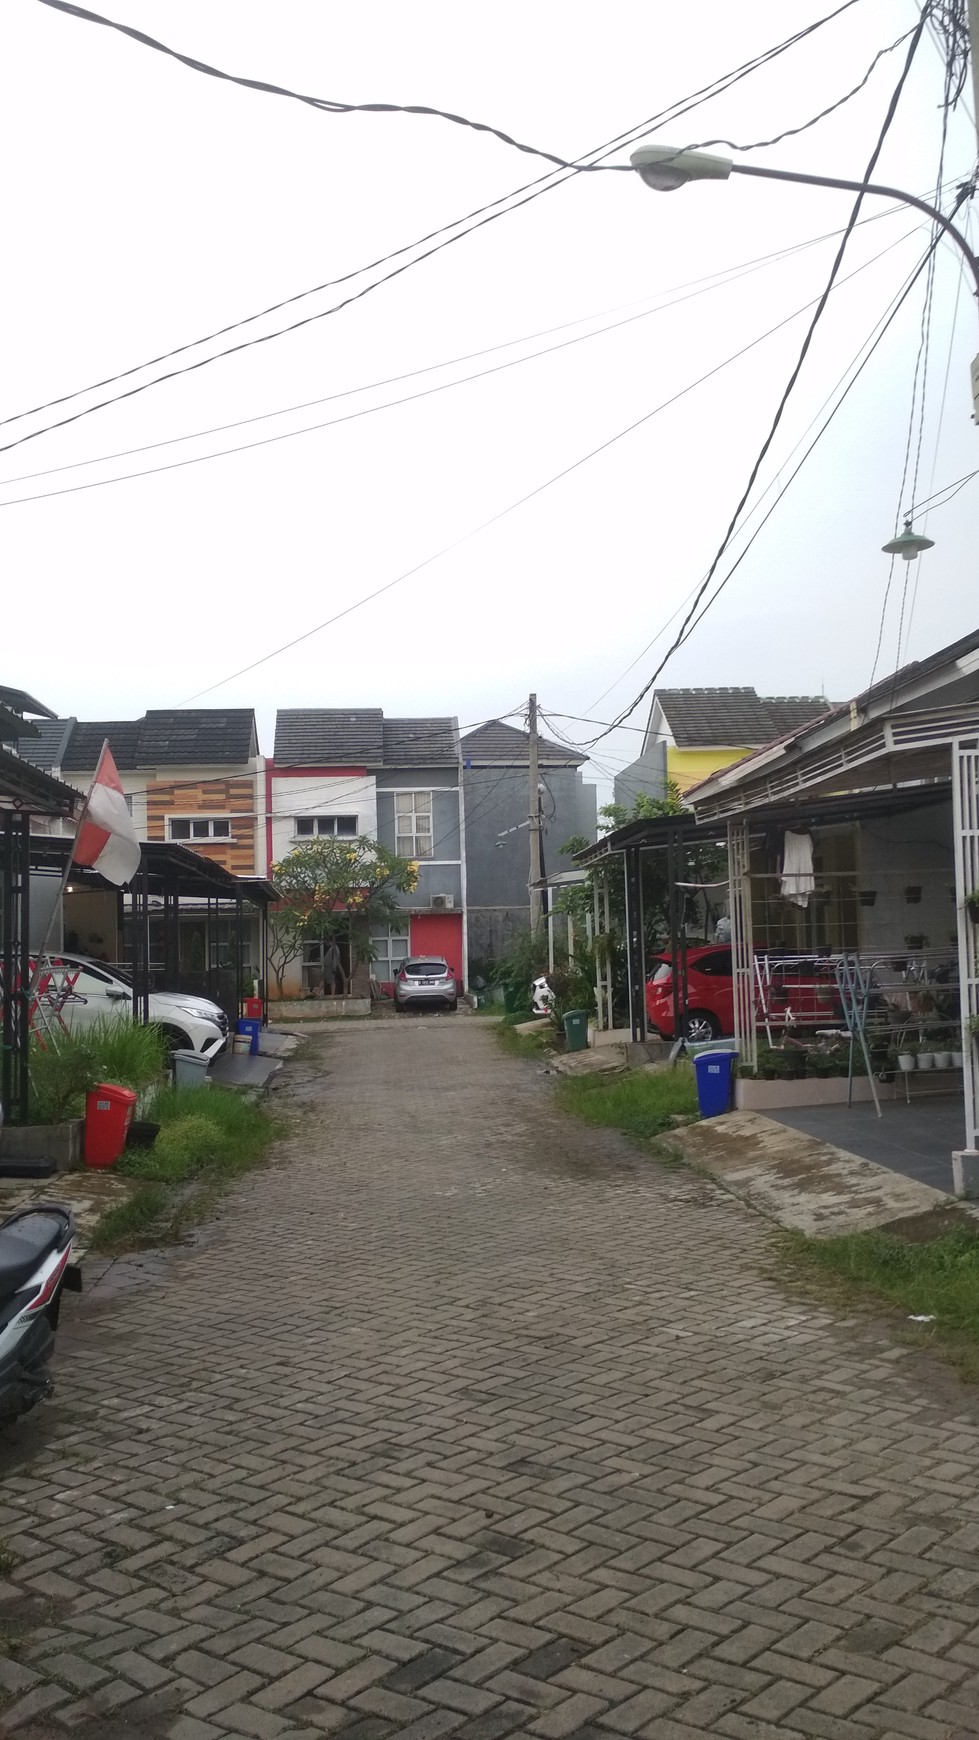 Rumah Minimalis siap huni di Jombang